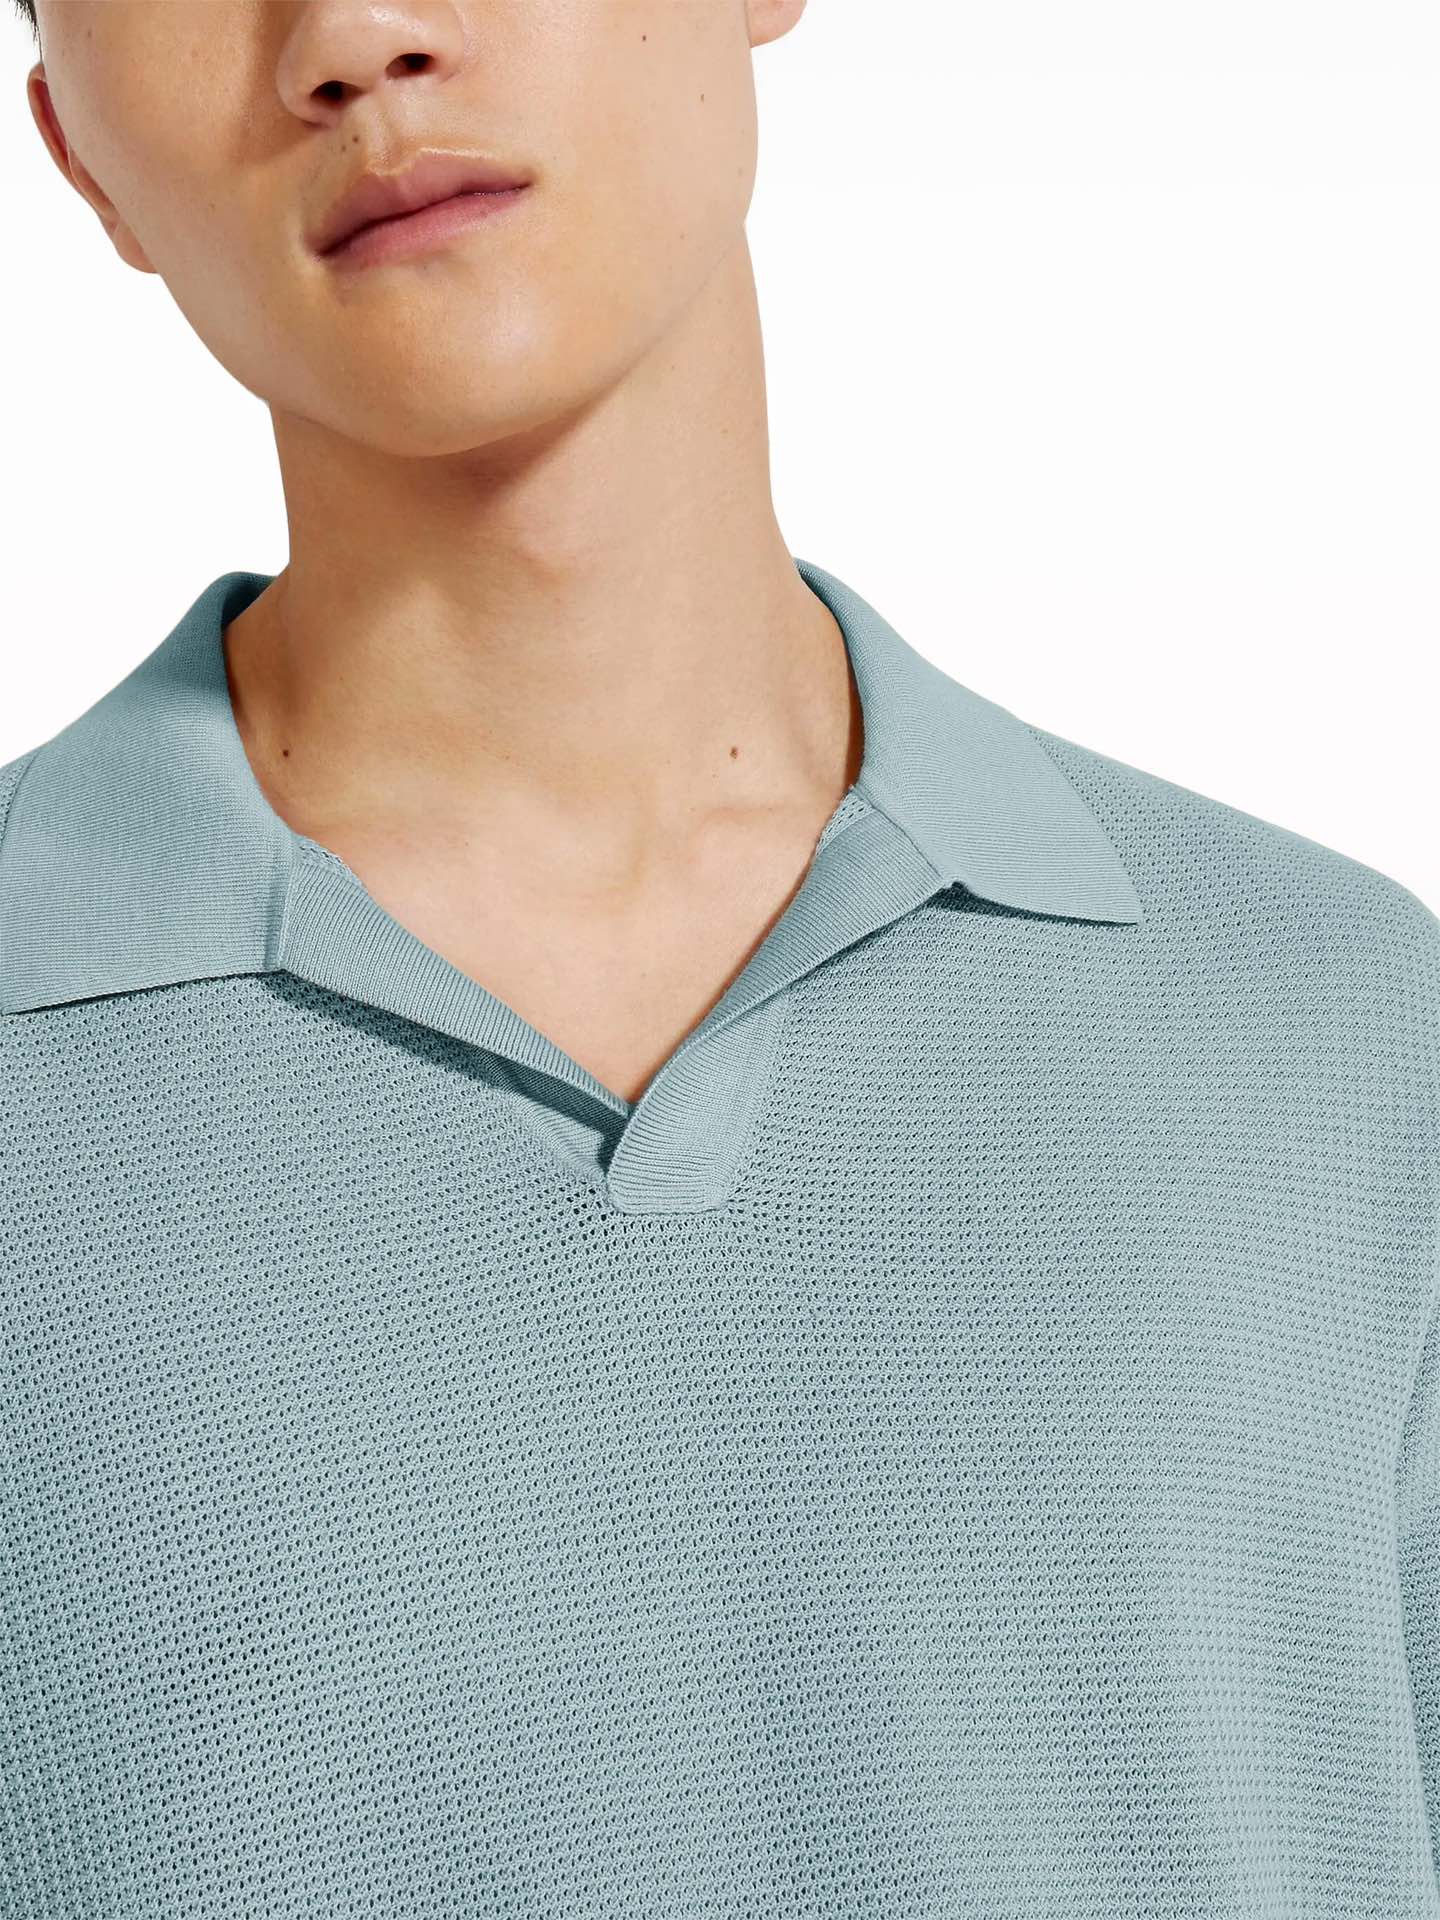 湖水蓝，BGA136zewqs-男款进口Stoll机织立体蜂巢网眼改良POlO领短袖针织衫关于款式及设计：Z家的高端主线系列，面料为王，版型取胜，作为刚需单品而存在的一组短袖针织衫，亲肤体感可以取代常规POLO衫。经典翻领 去扣门襟设计，剪刀V领的Buttonless设计比常规的POLO衫要更精简且更有腔调，可以参考官网模特穿搭，把POLO翻领穿出另一种形态。大身极简，合身微廓，肌理感极强的蜂巢网眼，构建透气舒适的中空结构。领部及门襟做了更高密的四平针织法，更有挺括度且结构稳